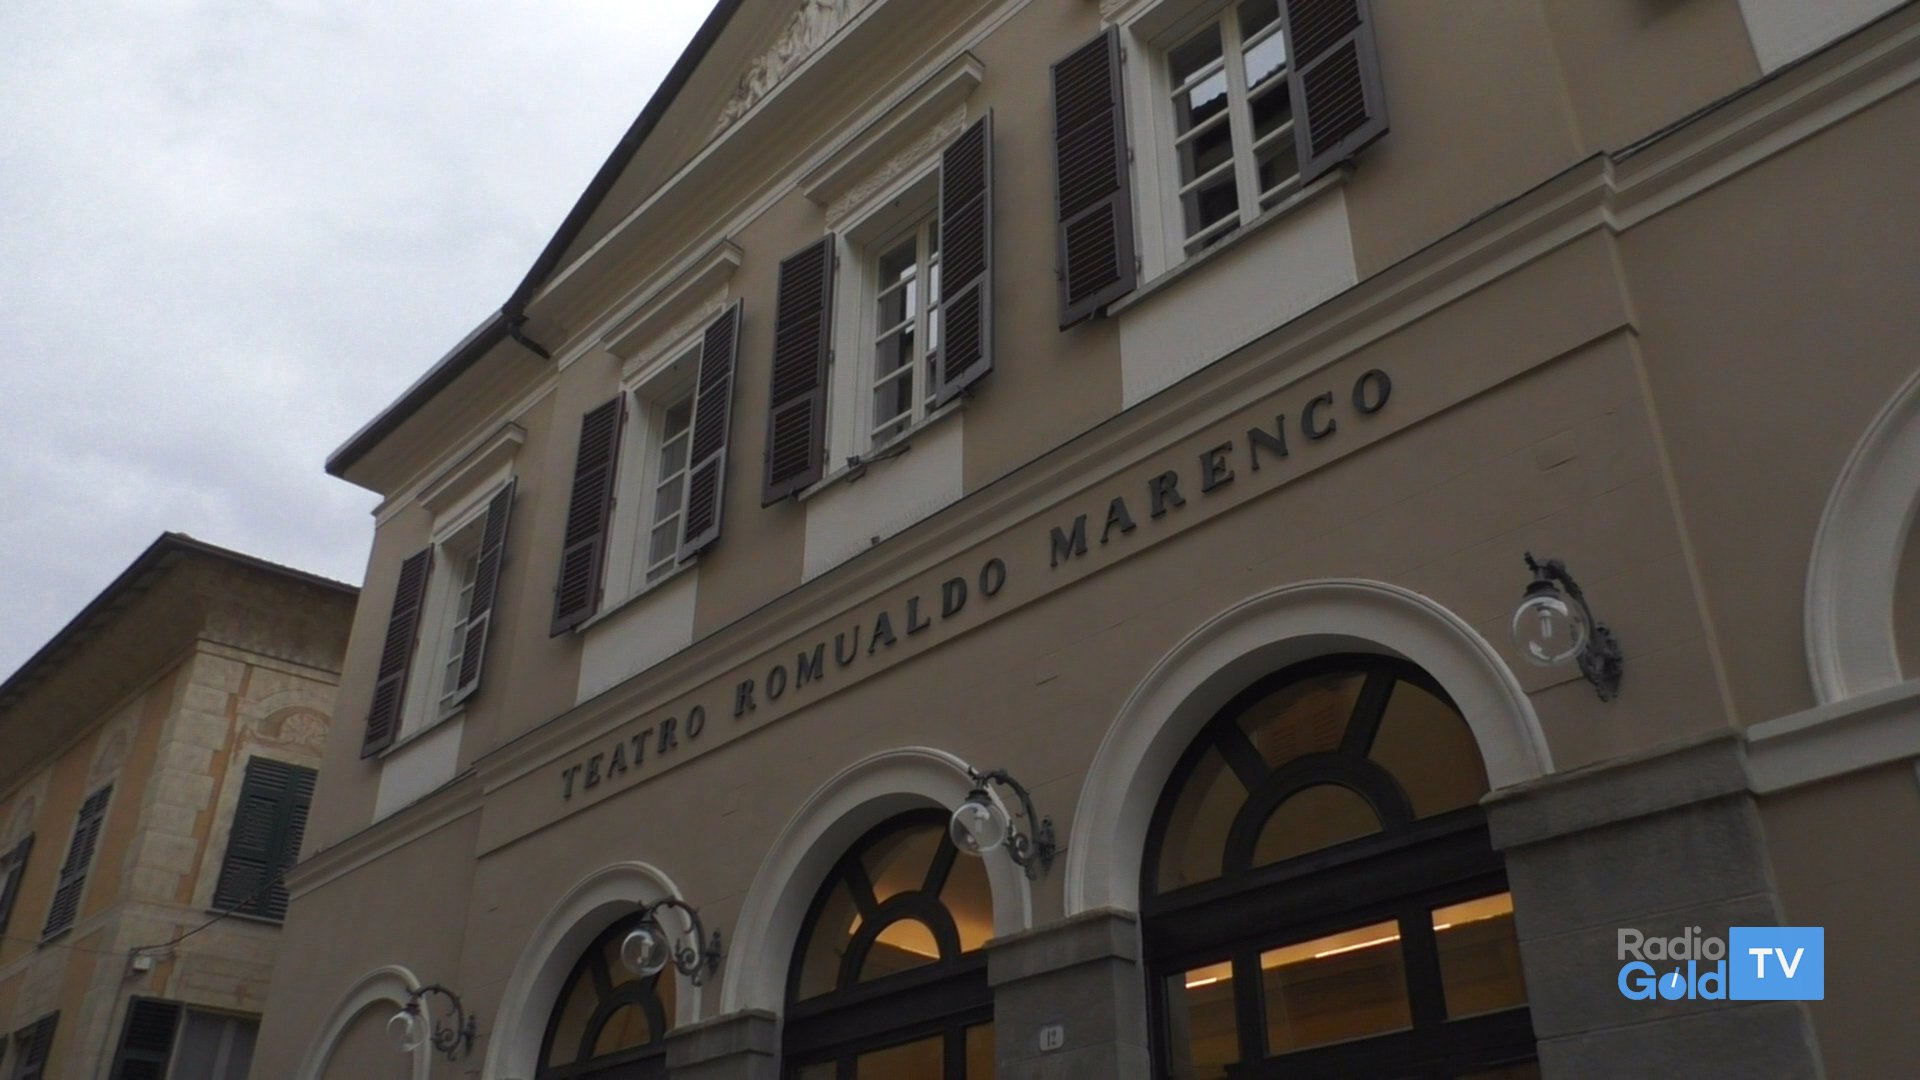 Fondazione Teatro Marenco: nominato il nuovo cda